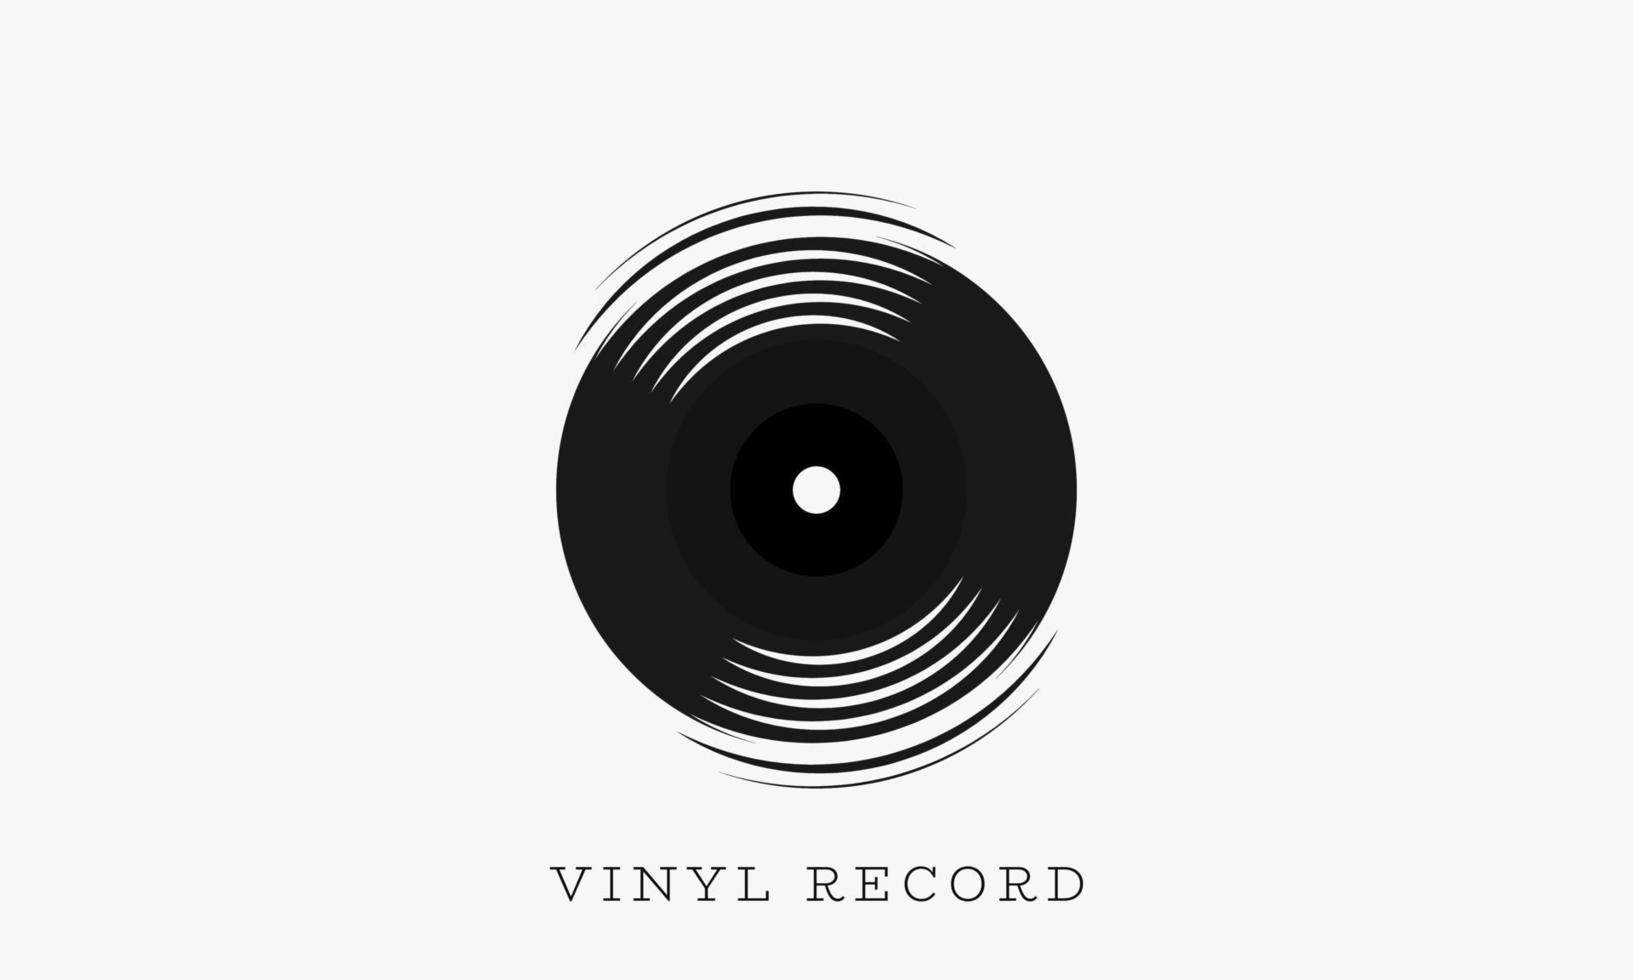 vinyl record logo design vector. vector